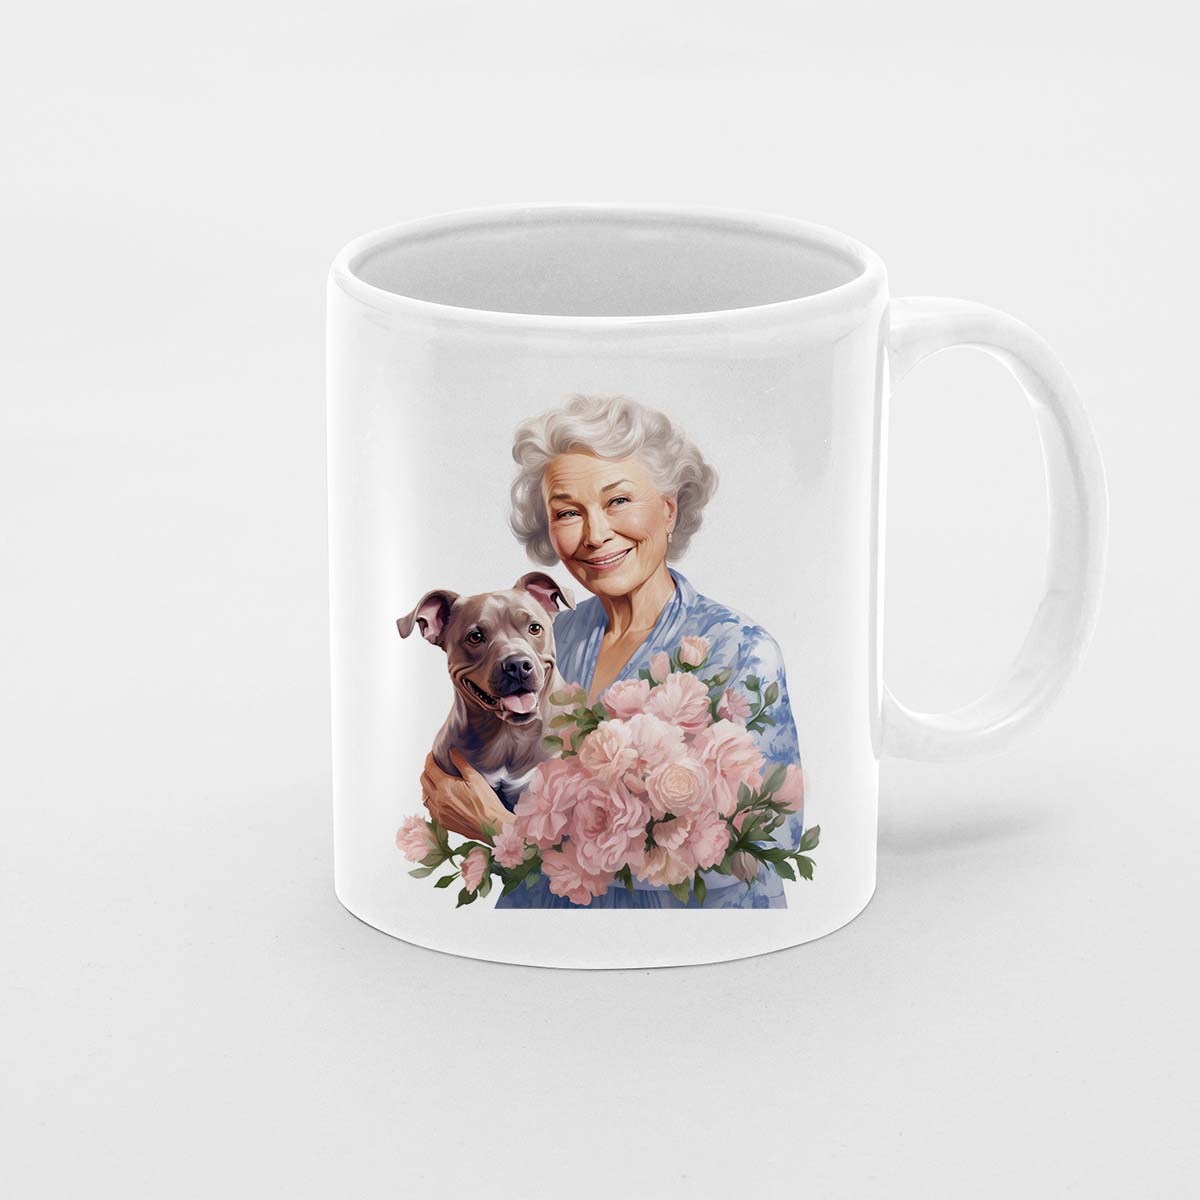 Custom Dog Mom Mug, Grandma and Pit Bull Love Ceramic Mug, Dog Owner Gift, Dog Lover Mug, Gift For Dog Mom, Gift For Dog Owner, Dog Coffee Mugs, Dog Grandma Coffee Mug, Mother's Day Gift